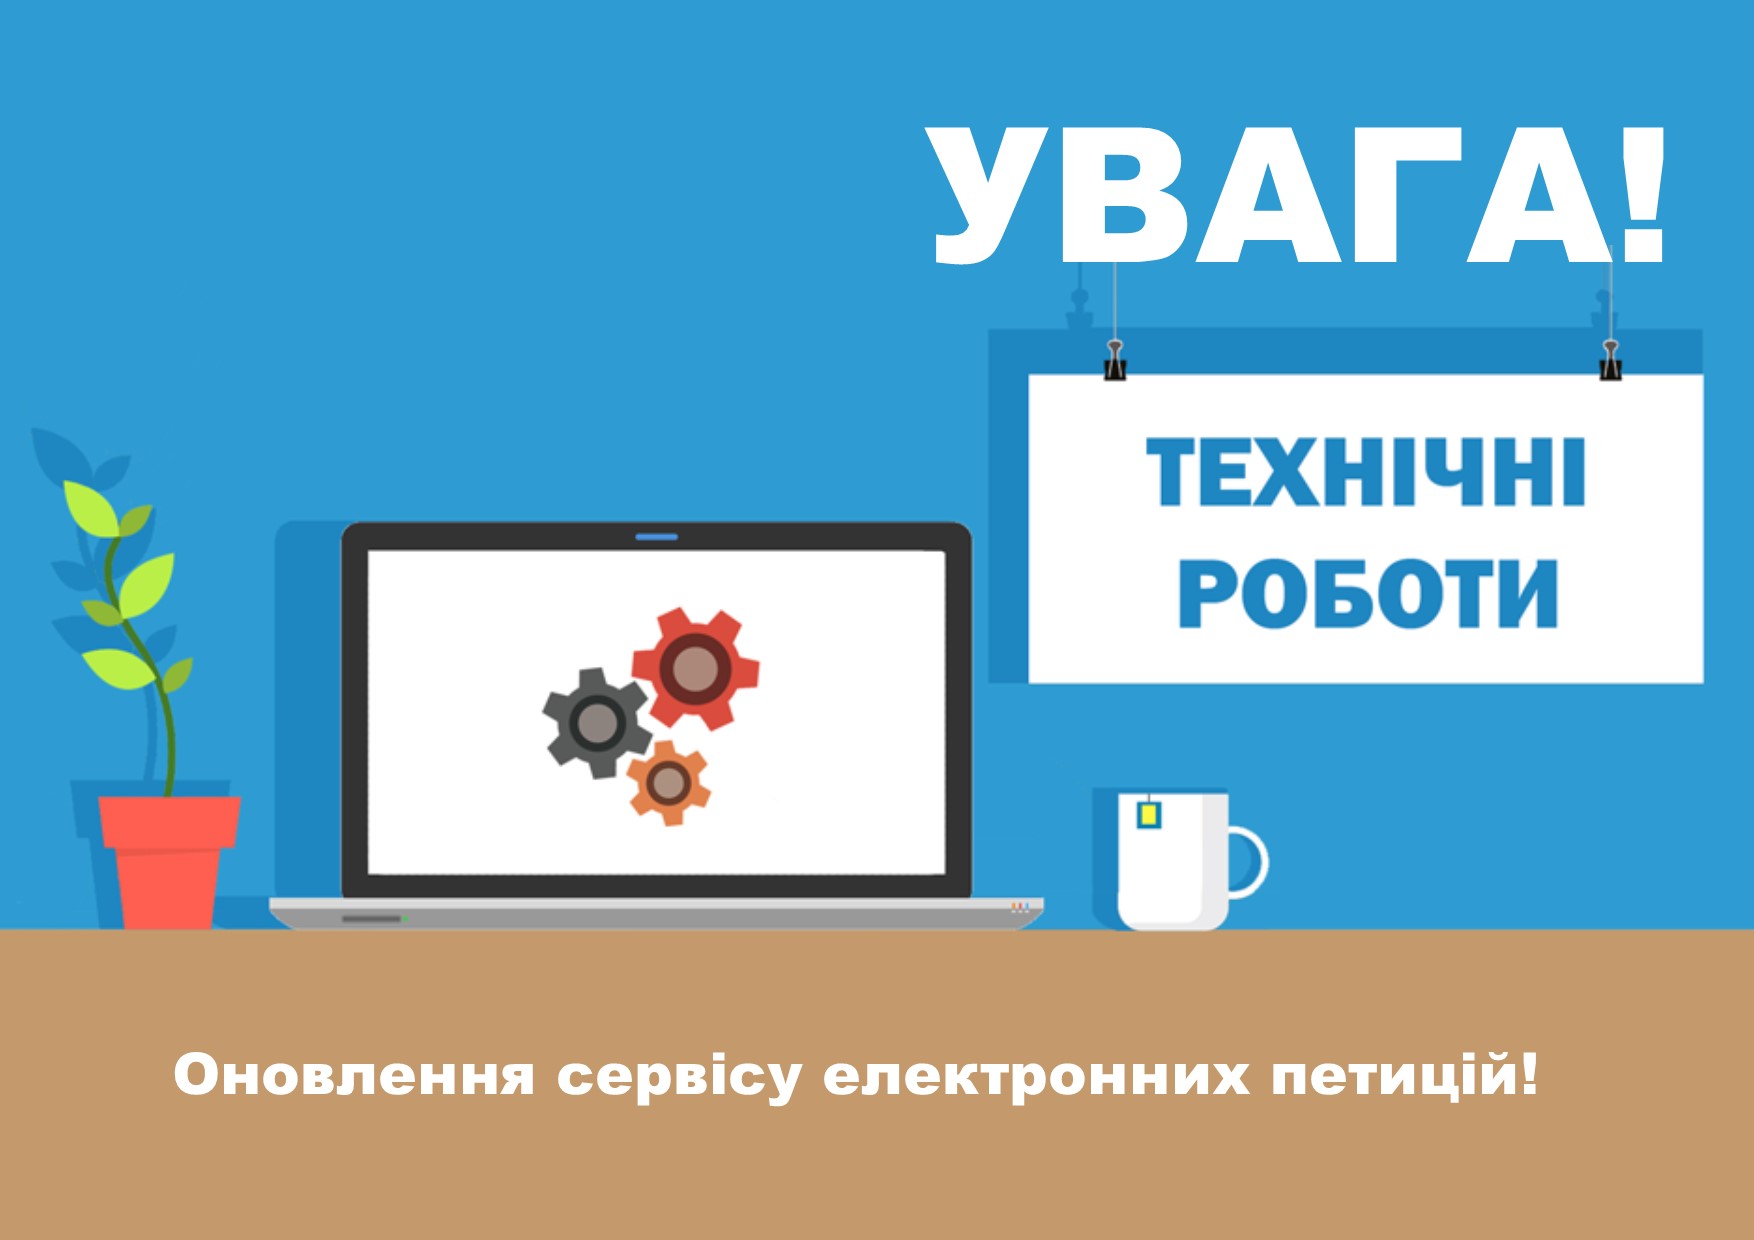 С завтрашнего дня сервис электронных петиций Киевсовета может быть временно недоступен